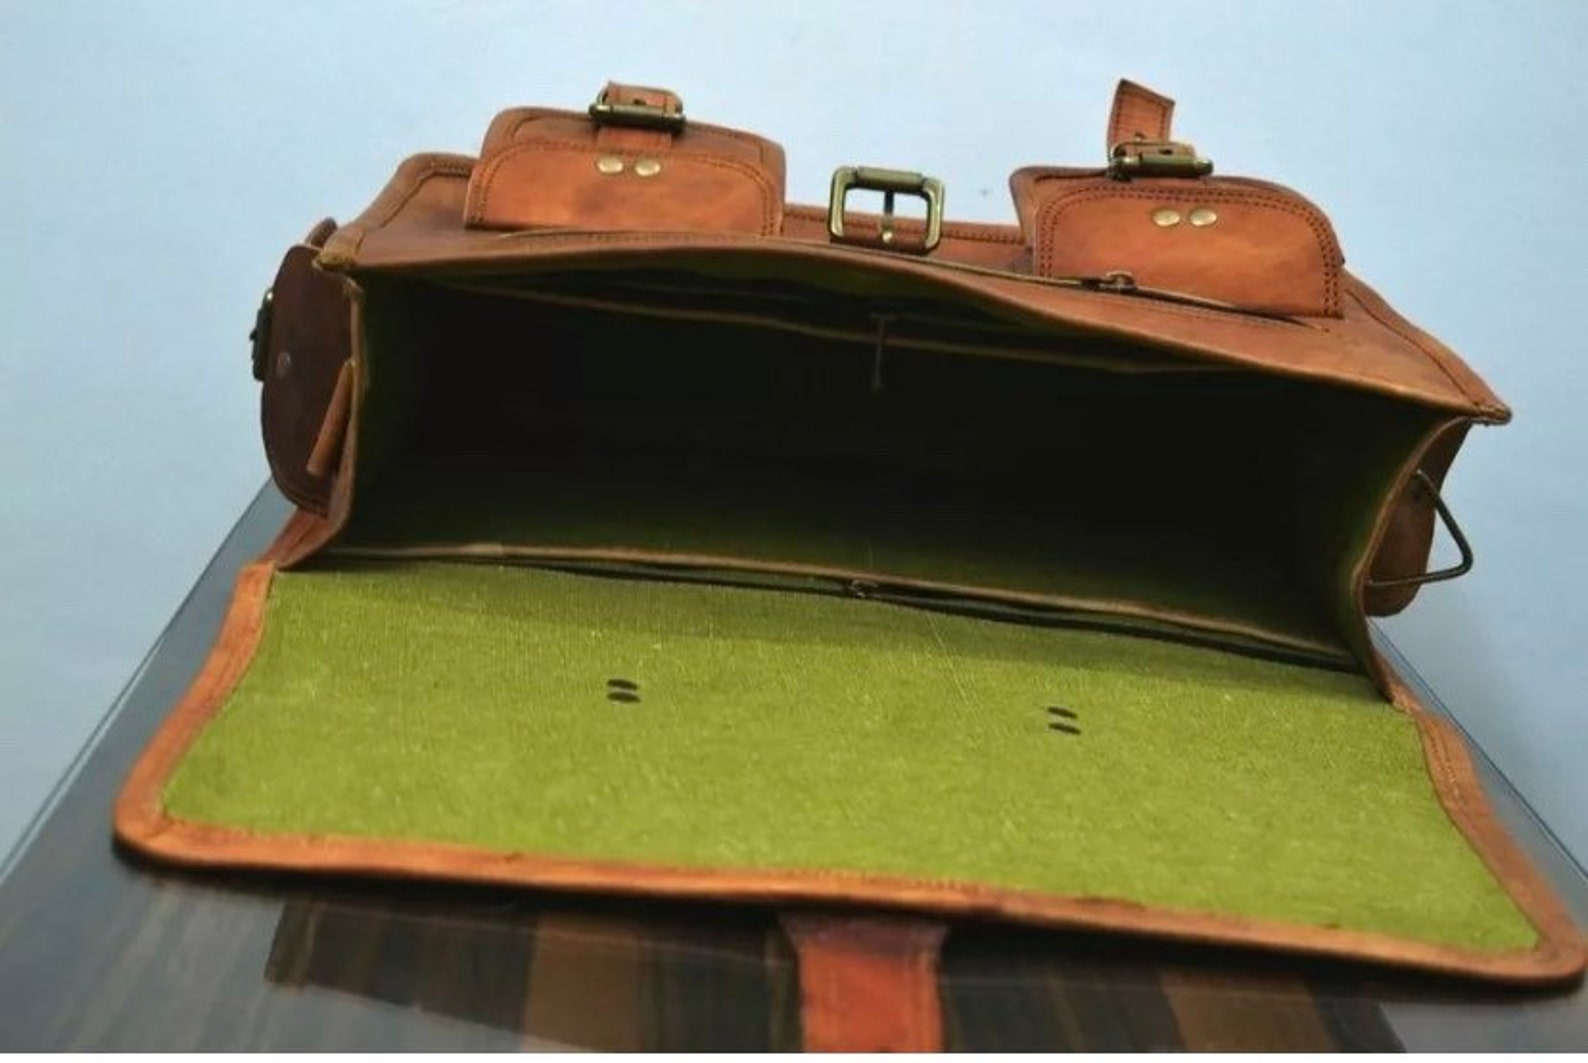 Genuine Brown Leather Messenger Bag Shoulder Bag Laptop Bag - Etsy UK